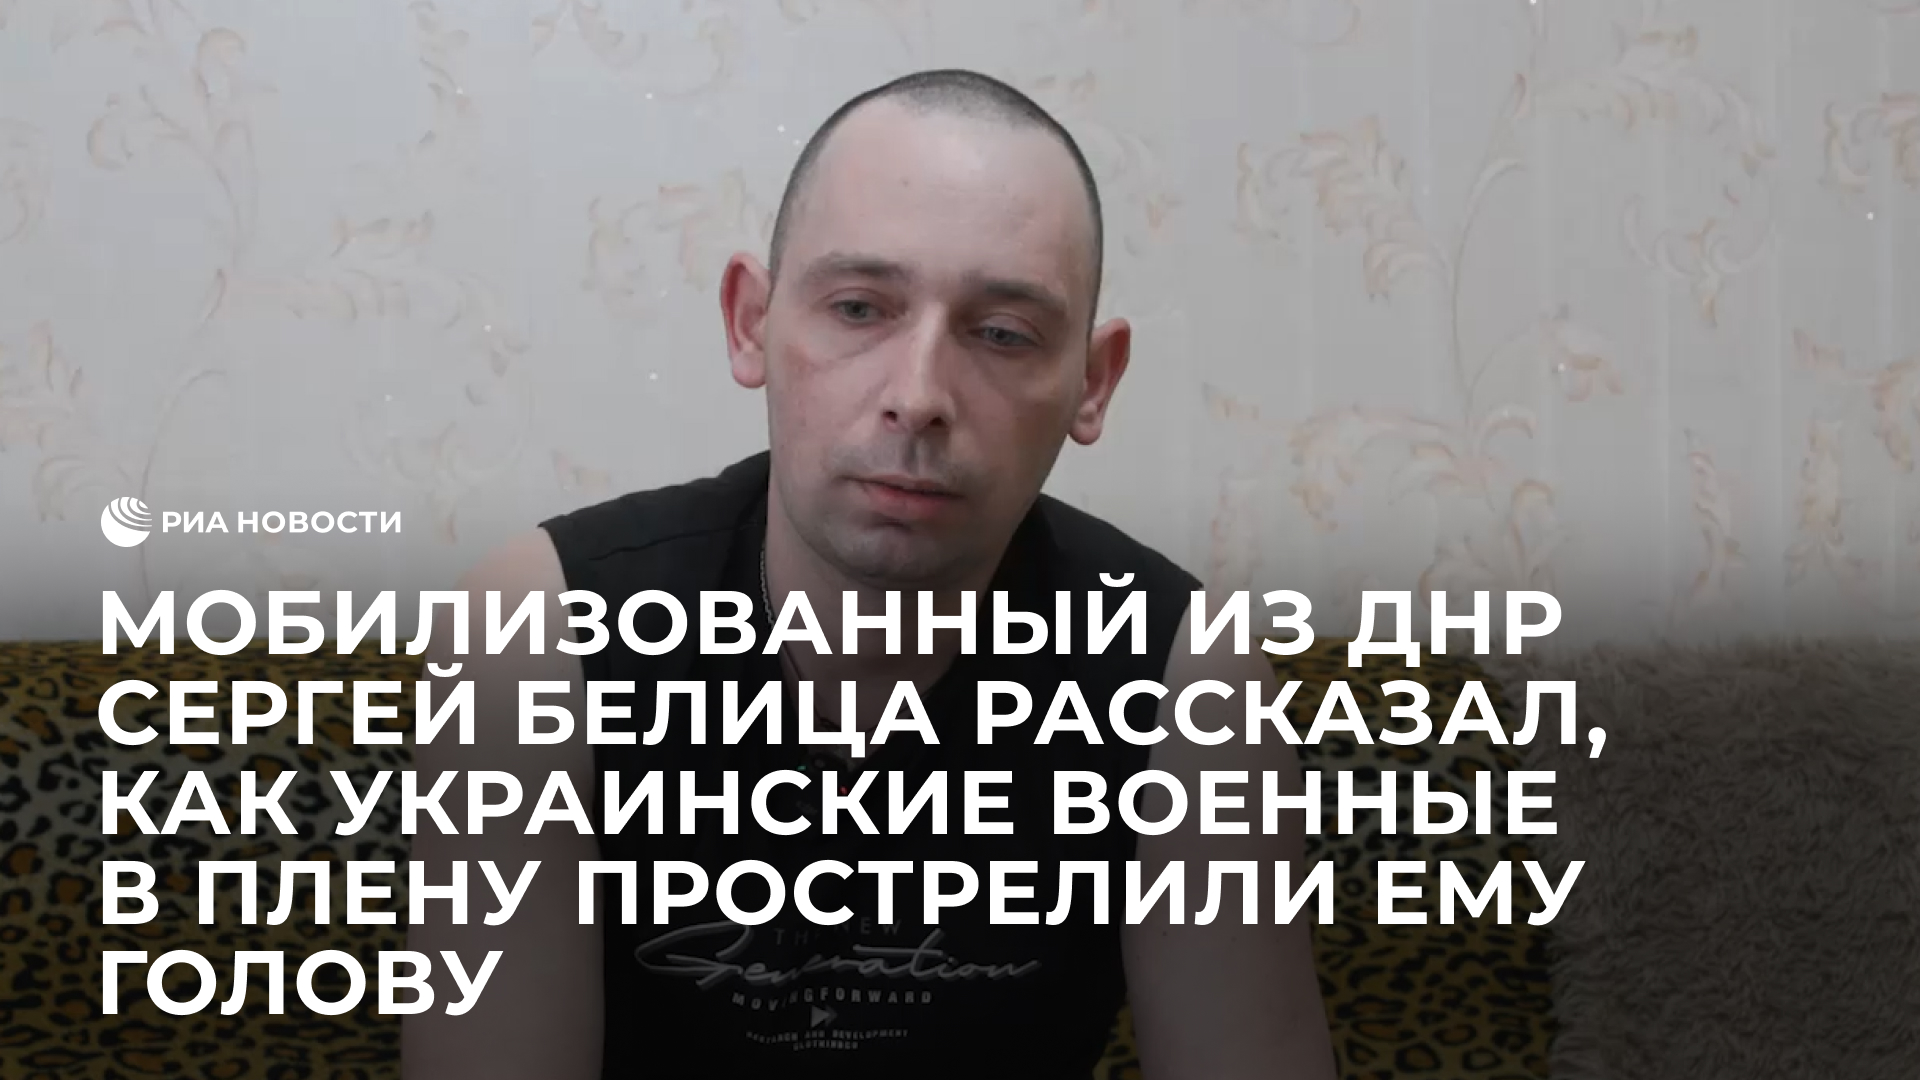 Мобилизованный из ДНР Сергей Белица рассказал, как украинские военные в плену прострелили ему голову